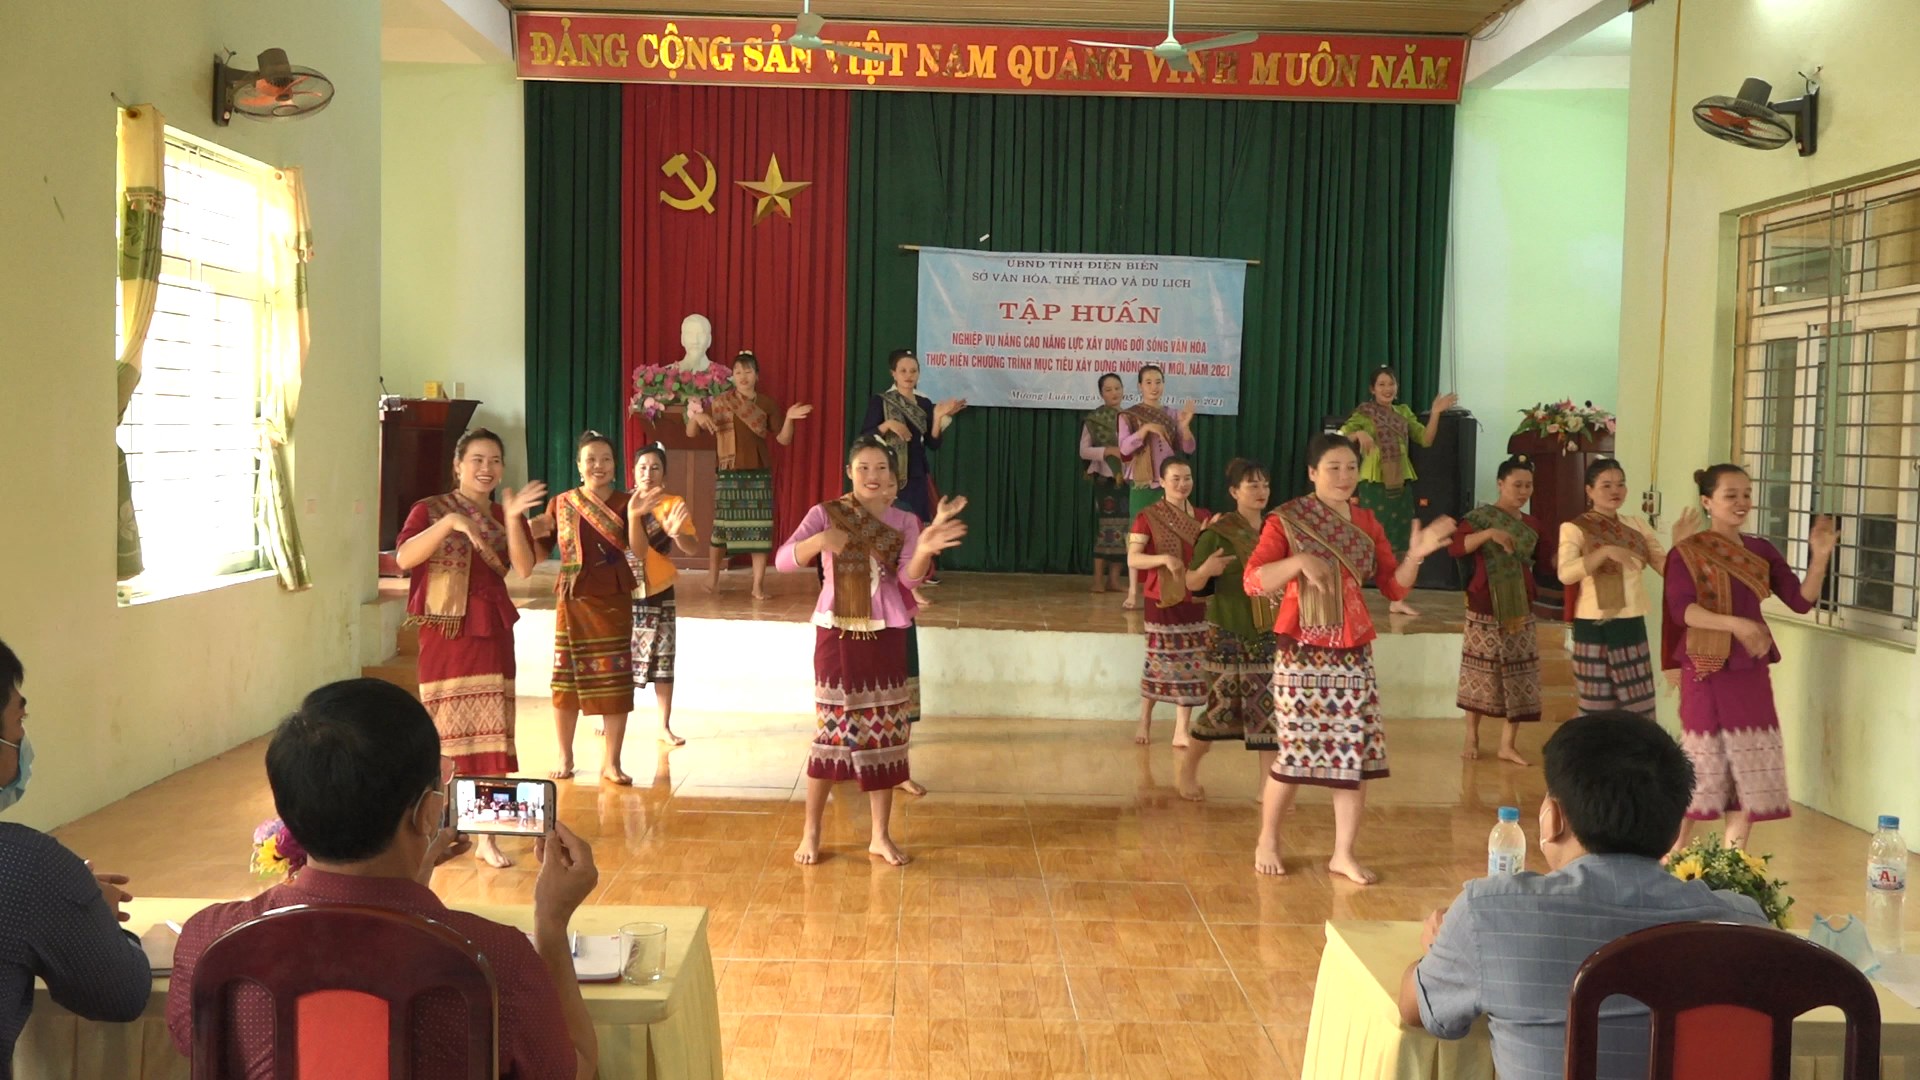 Nâng cao chất lượng xây dựng nông thôn mới, lưu giữ bản sắc văn hóa dân tộc ở Điện Biên - Ảnh 2.